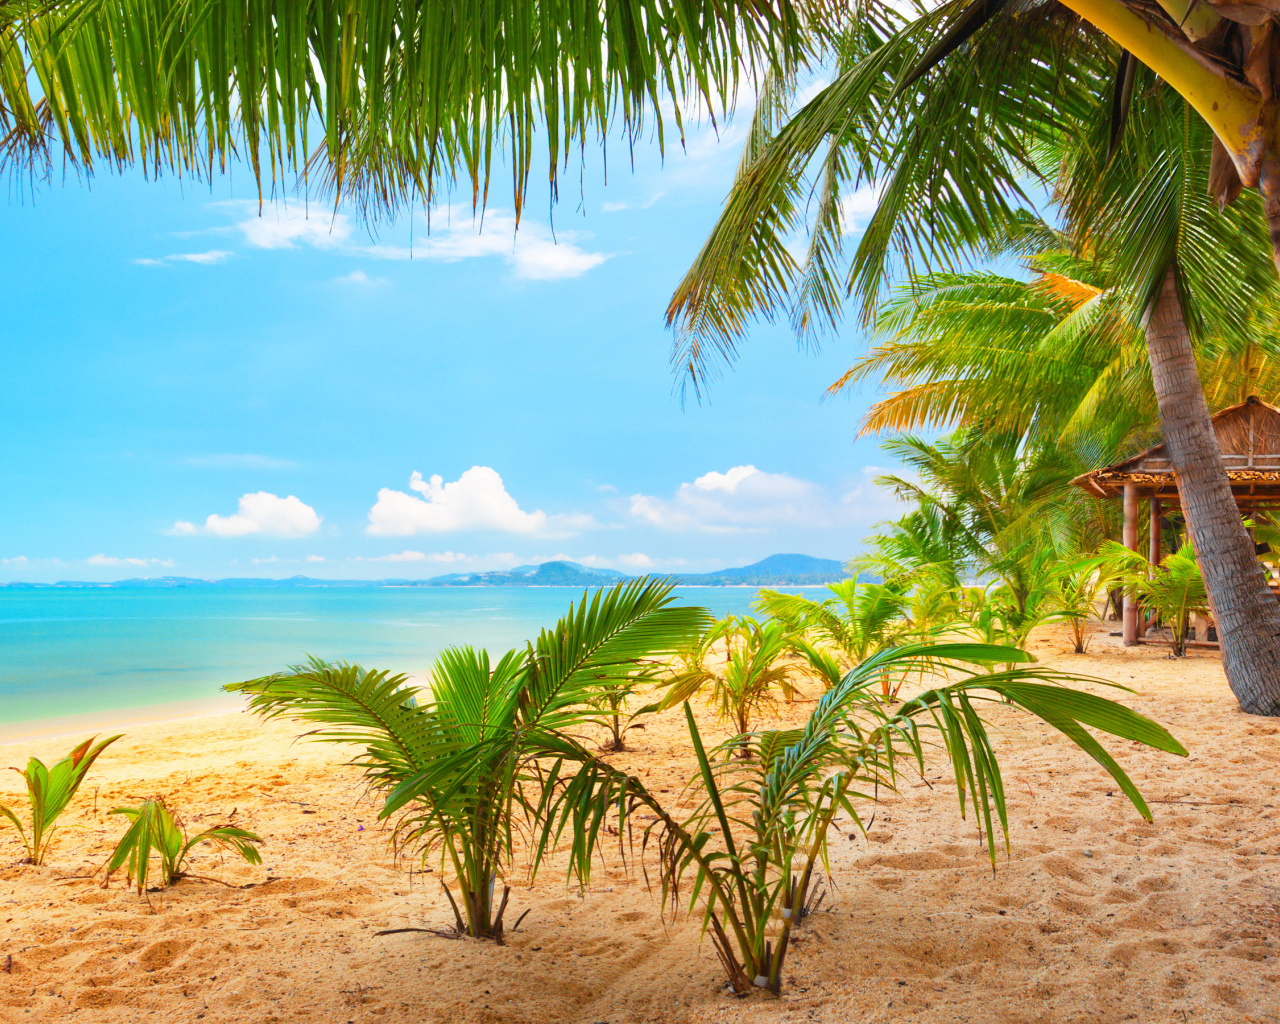 Тропический пляж с пальмами у океана